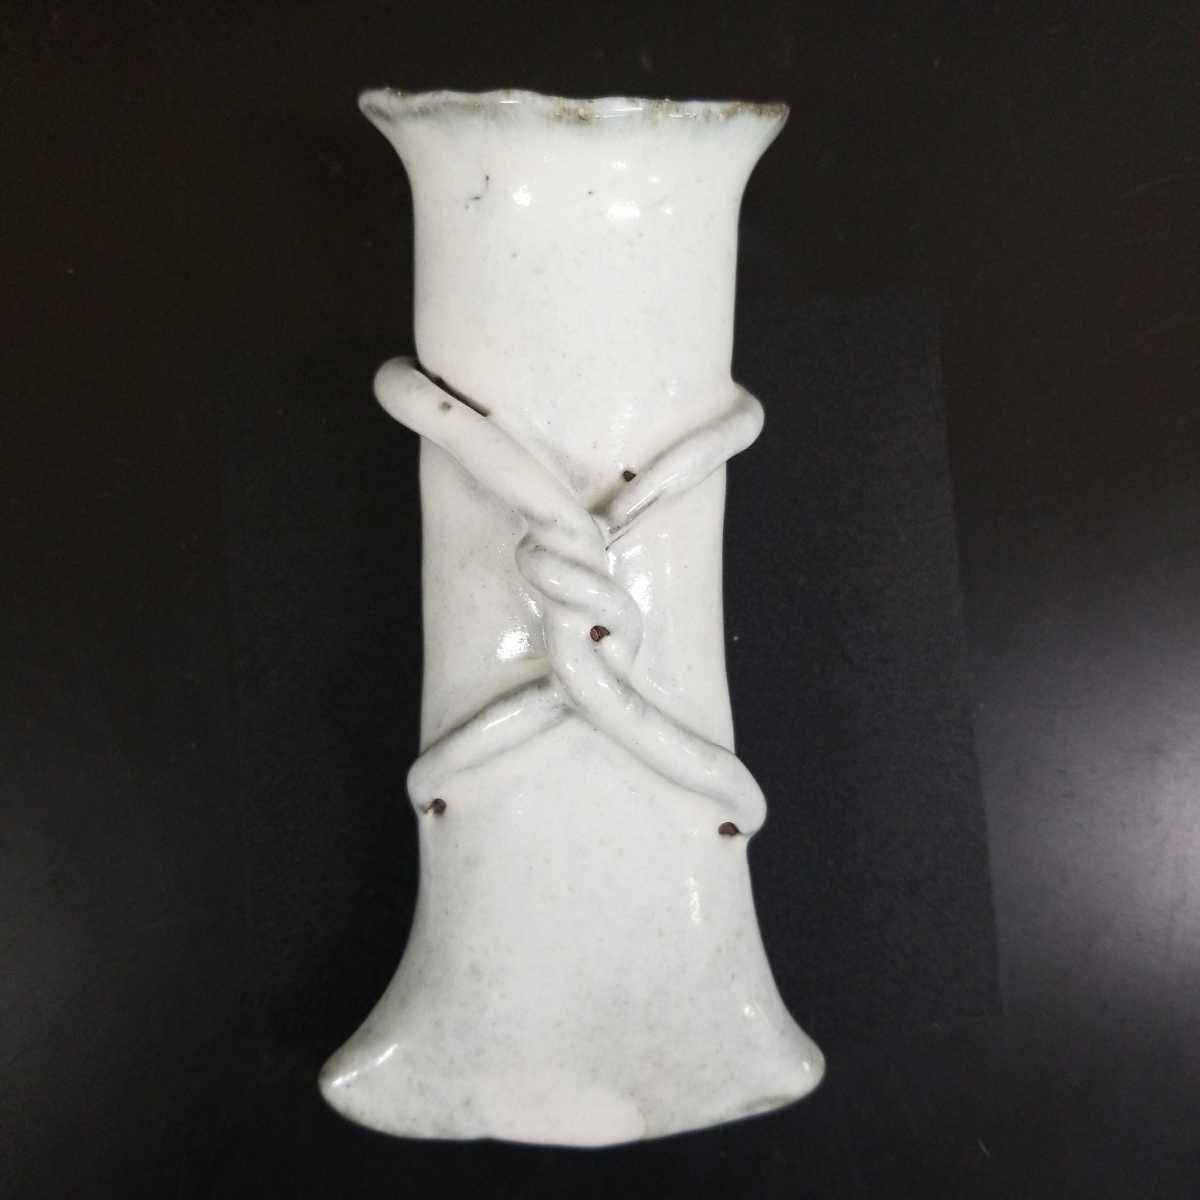  9 83) Hagi . белый Hagi орнамент цветок входить Zaimei чайная посуда не использовался новый товар включение в покупку приветствуется 